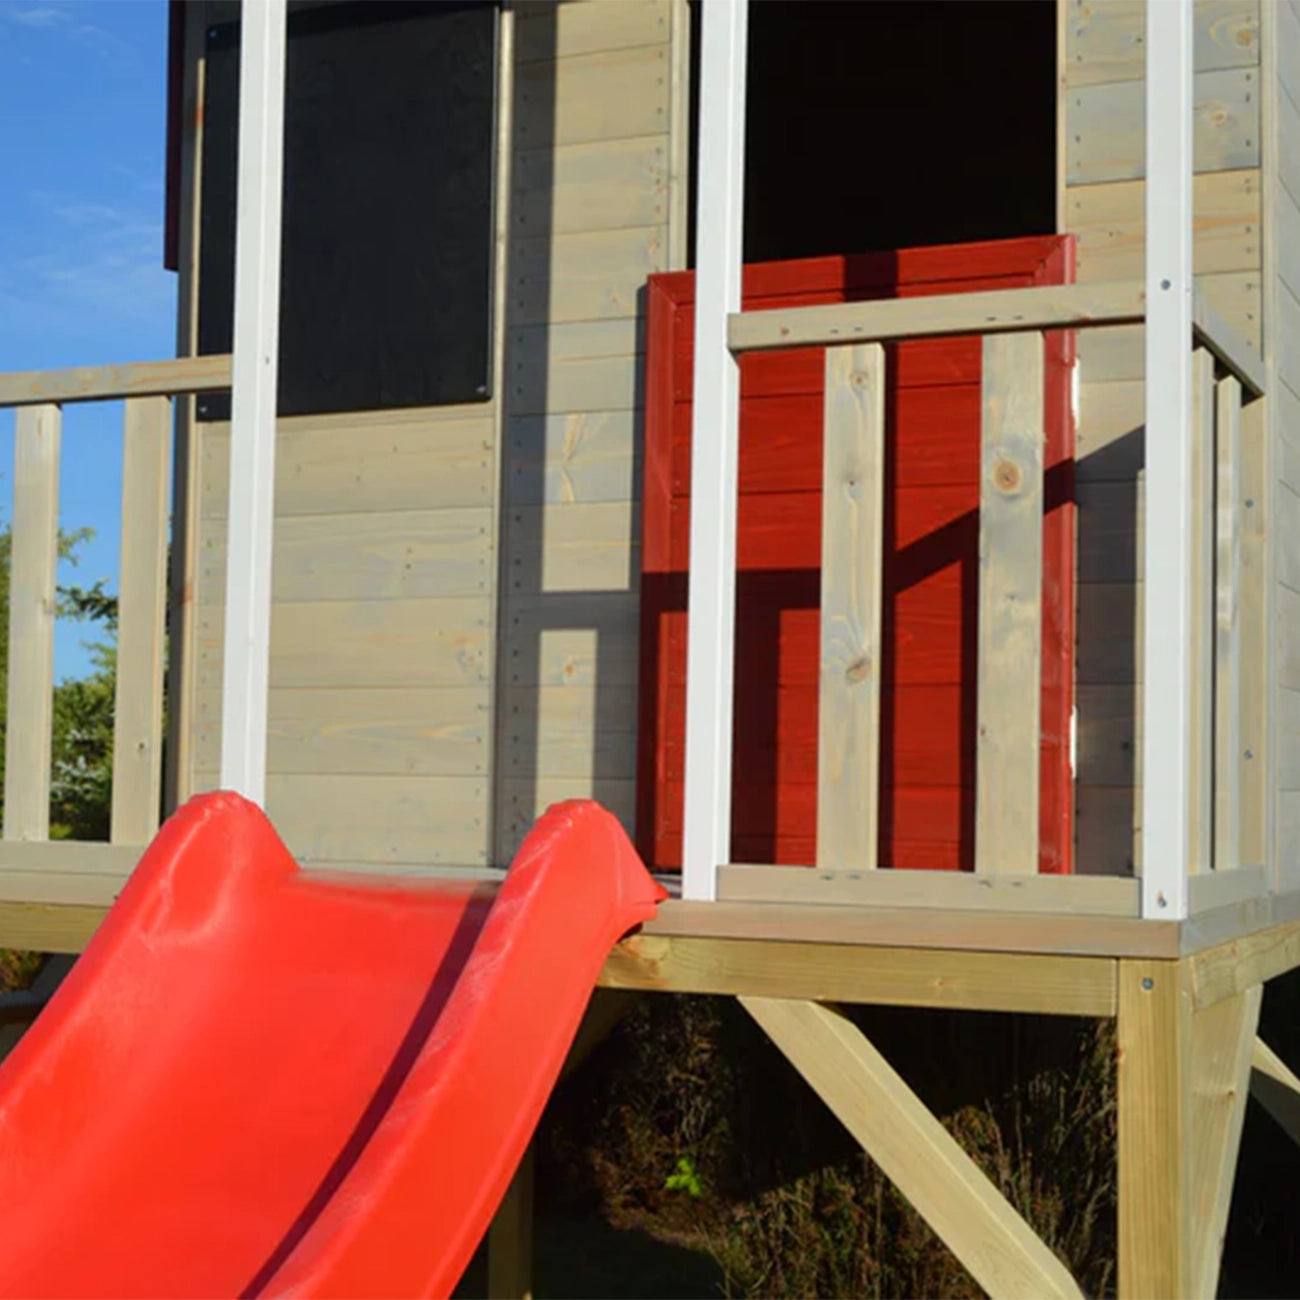 Casuta de gradina pentru copii, Summer Adventure House cu platforma, loc pentru nisip si tobogan, +3ani, Wendi Toys